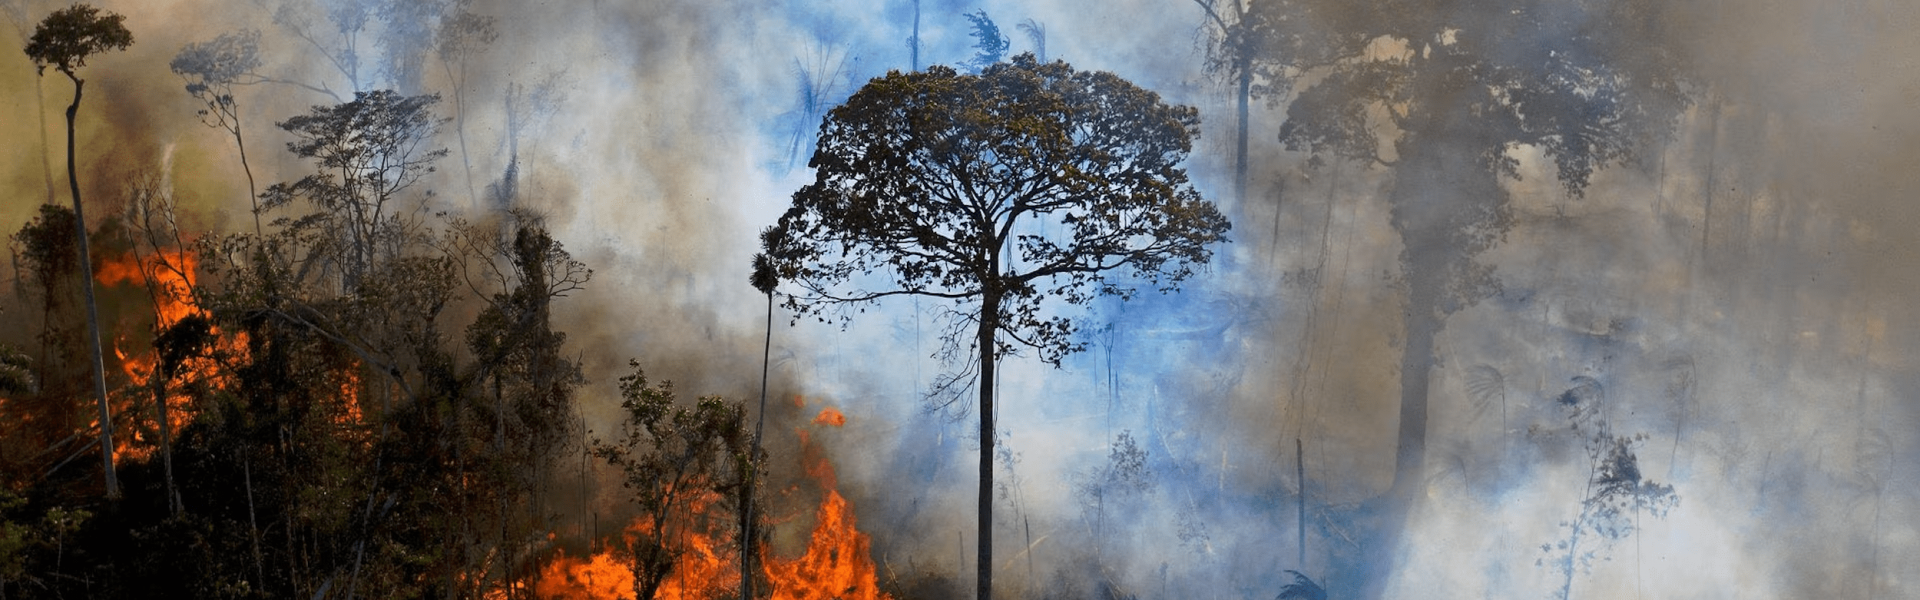 Questões ambientais afligem mais da metade dos brasileiros, diz pesquisa